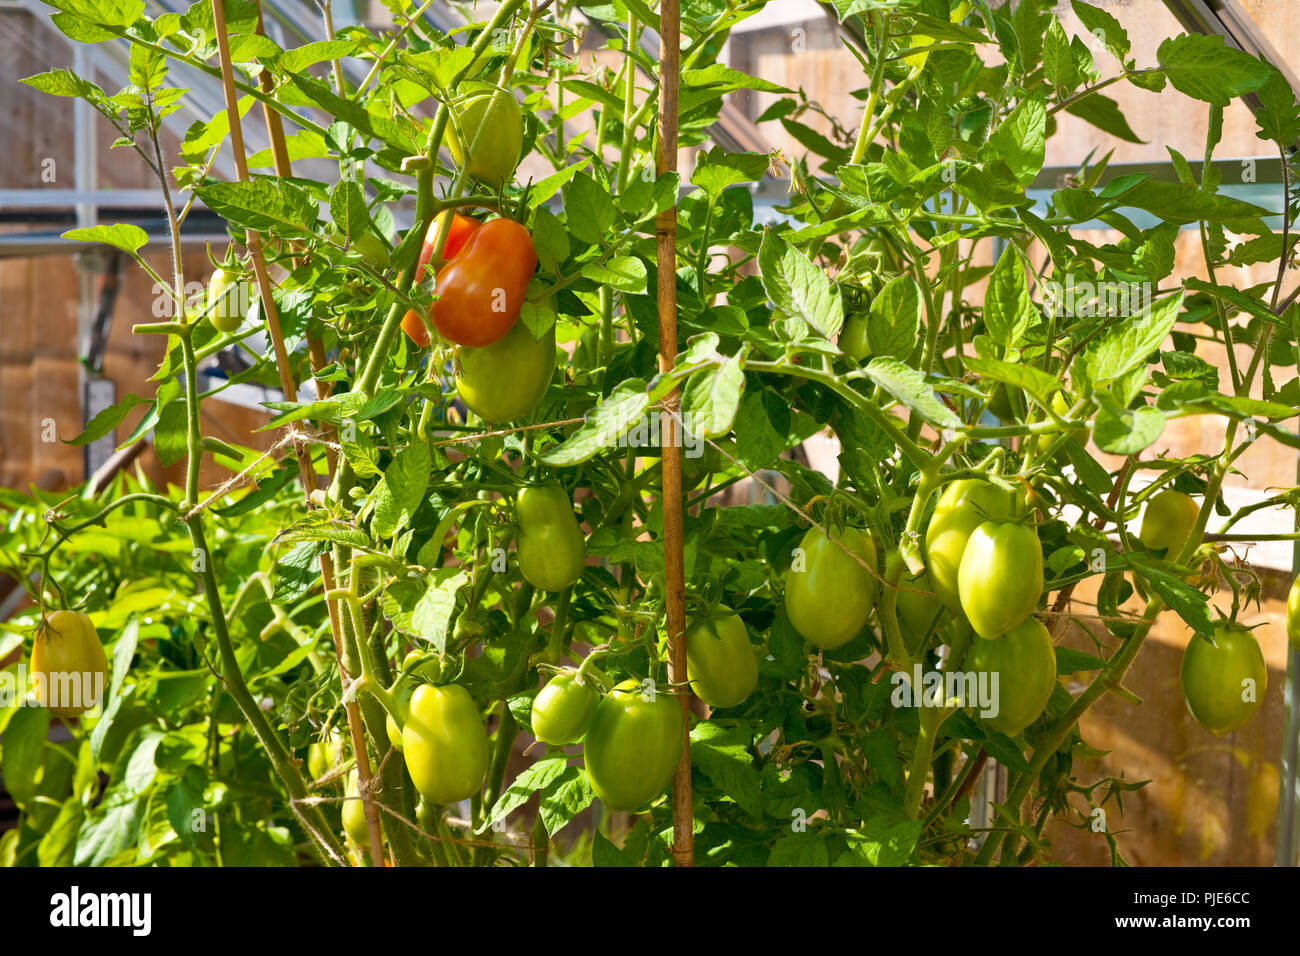 Nahaufnahme von Roma-Pflaumentomaten Tomatenpflanzen Pflanzen wachsen in  einem Gewächshaus im Sommer England Vereinigtes Königreich GB  Großbritannien Stockfotografie - Alamy